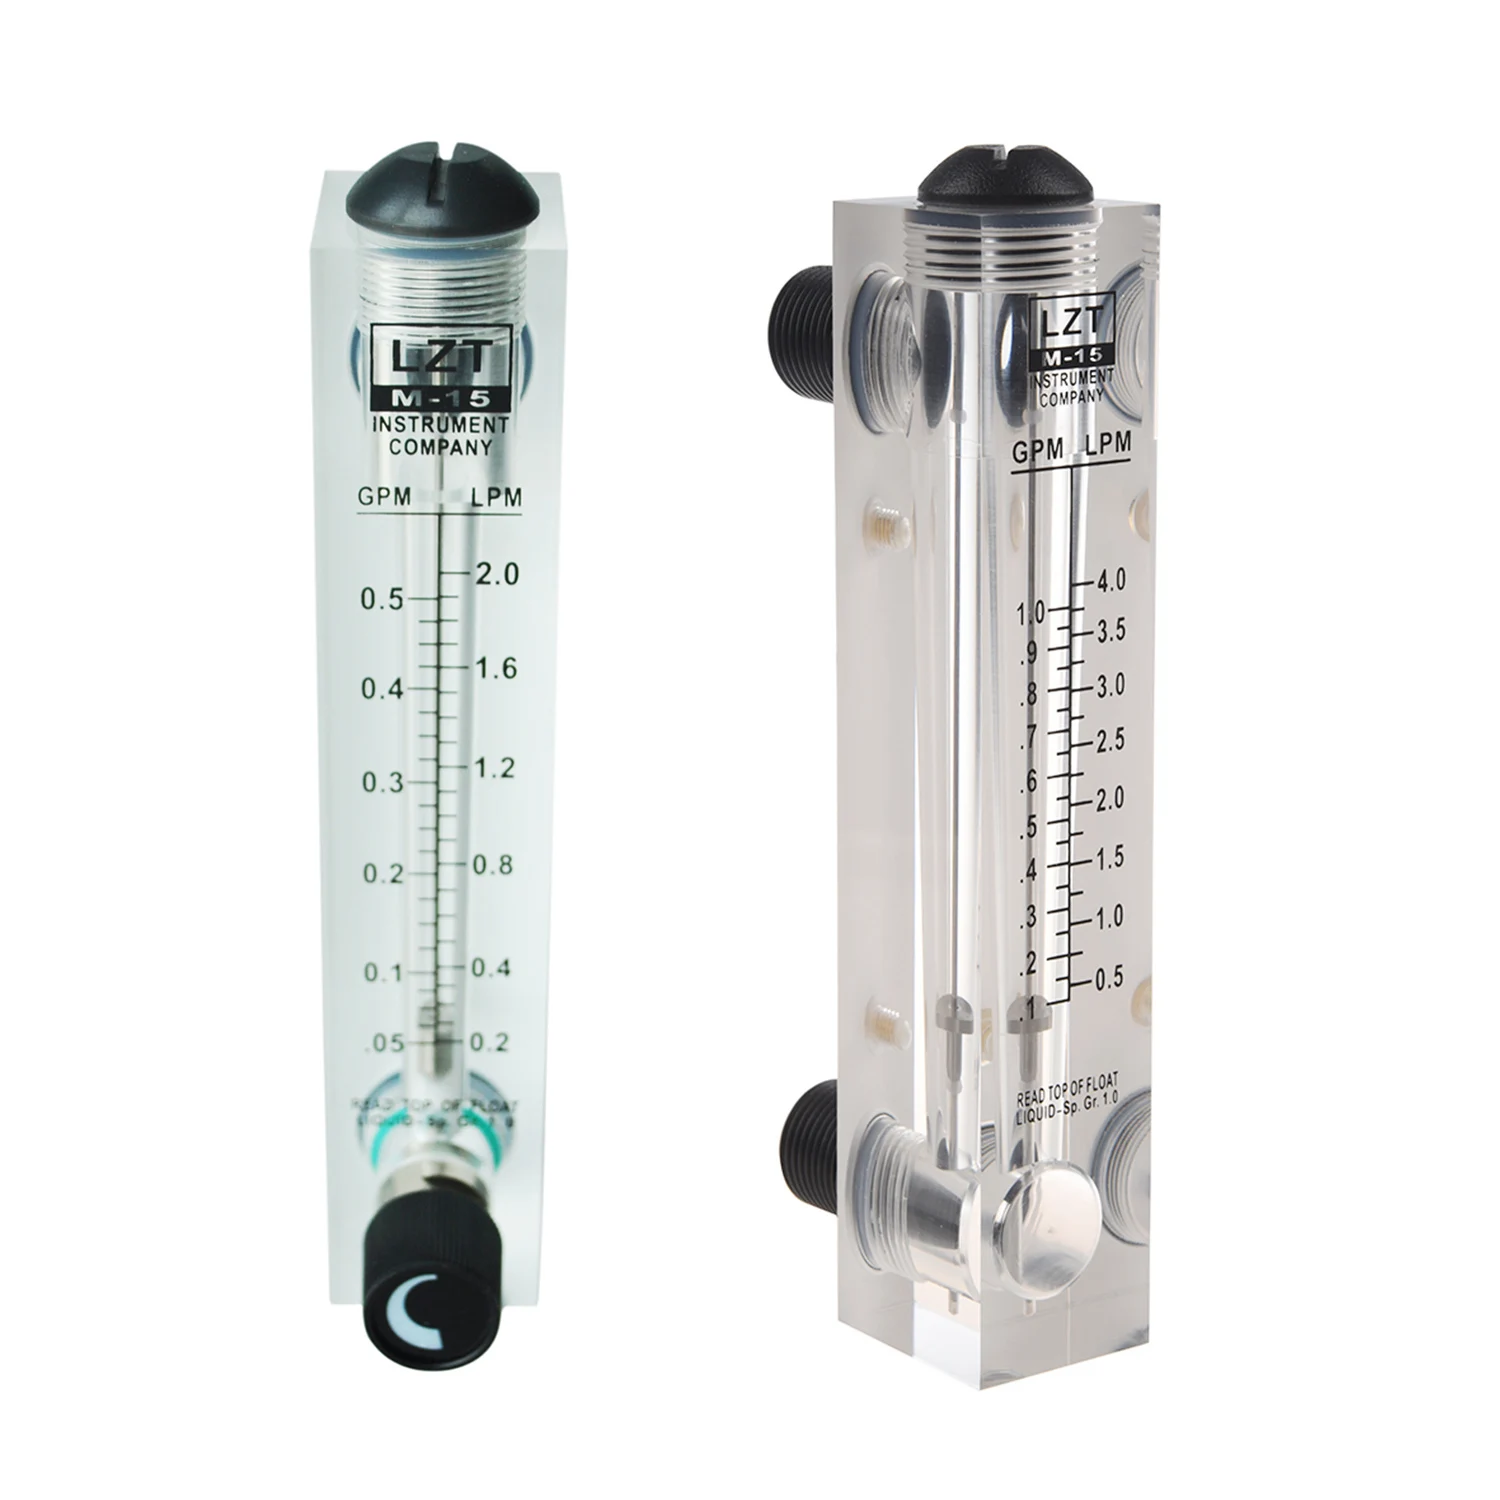 

Расходомер 2 шт.: 1 шт. черный регулируемый поток 0,1-1 GPM, измеритель расхода воды в панельном исполнении, LZM-15 и 1 шт. резьба 1/2 дюйма PT 0,05-gp